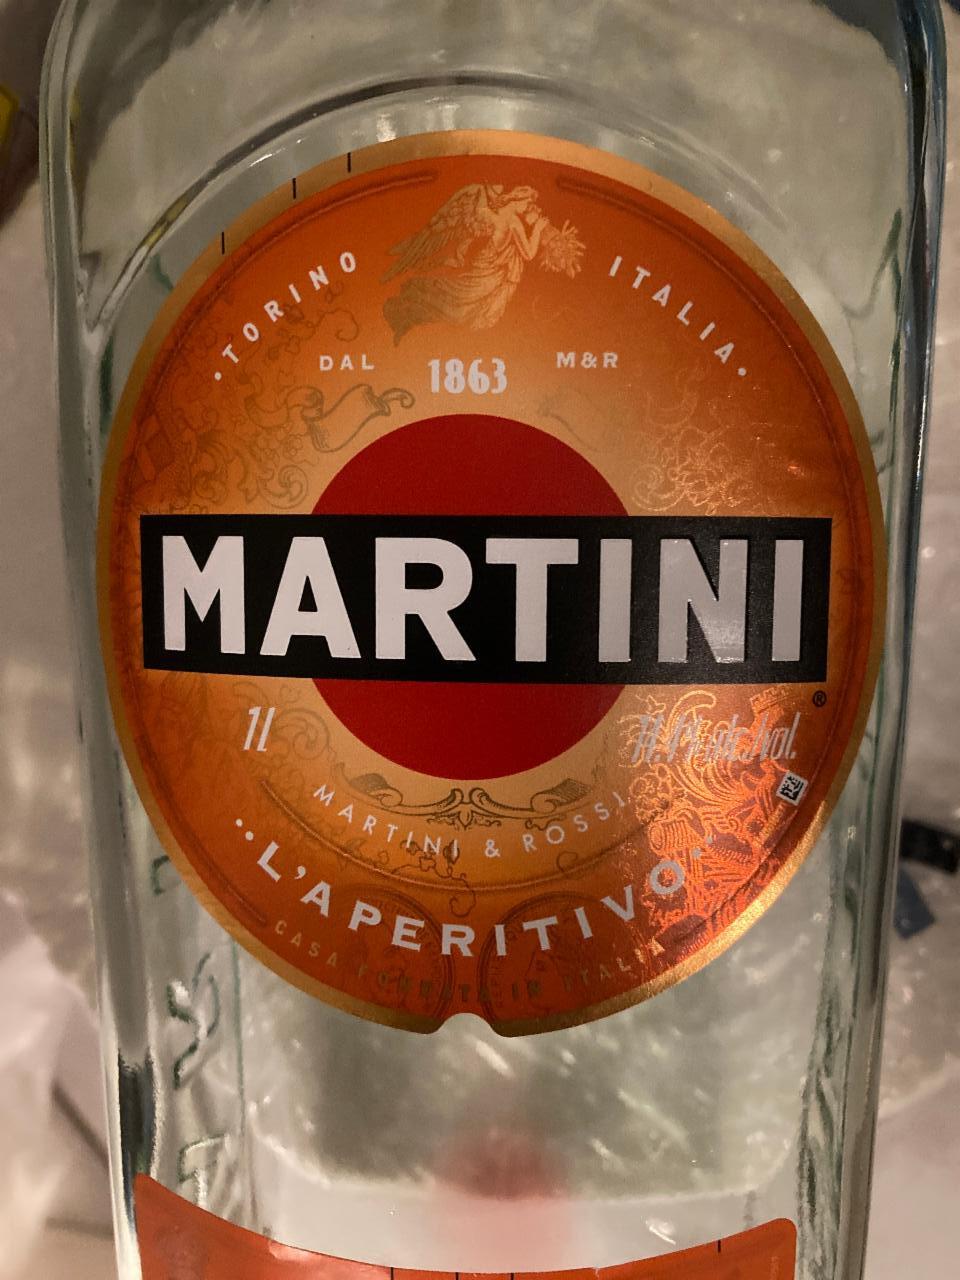 kJ kalorie, i Martini Fiero wartości - odżywcze 14,4%